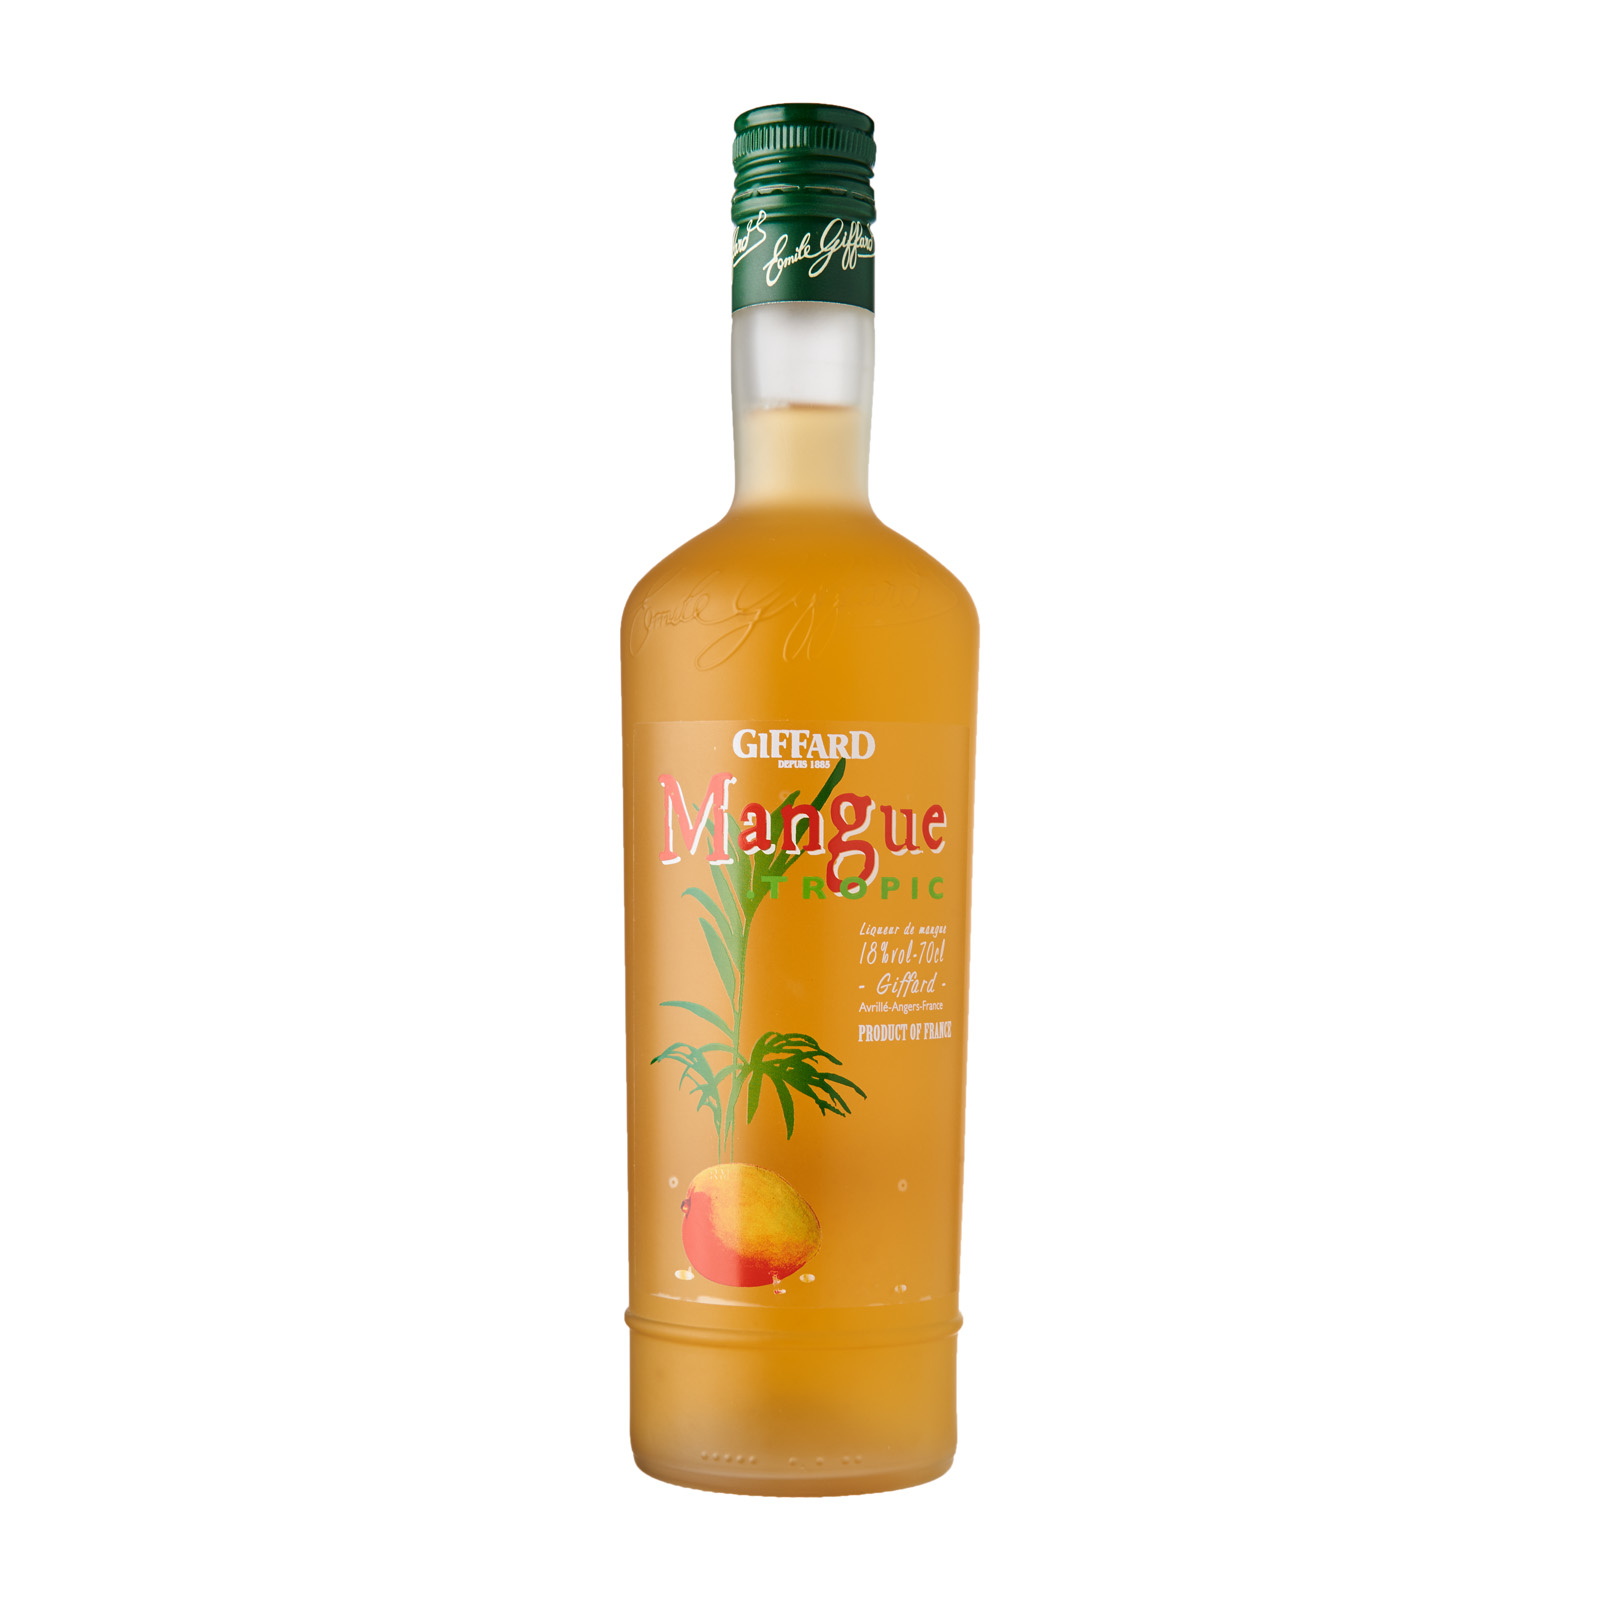 Giffard Mangue Tropic (Mango) Liqueur 700ml [ Liquor ]